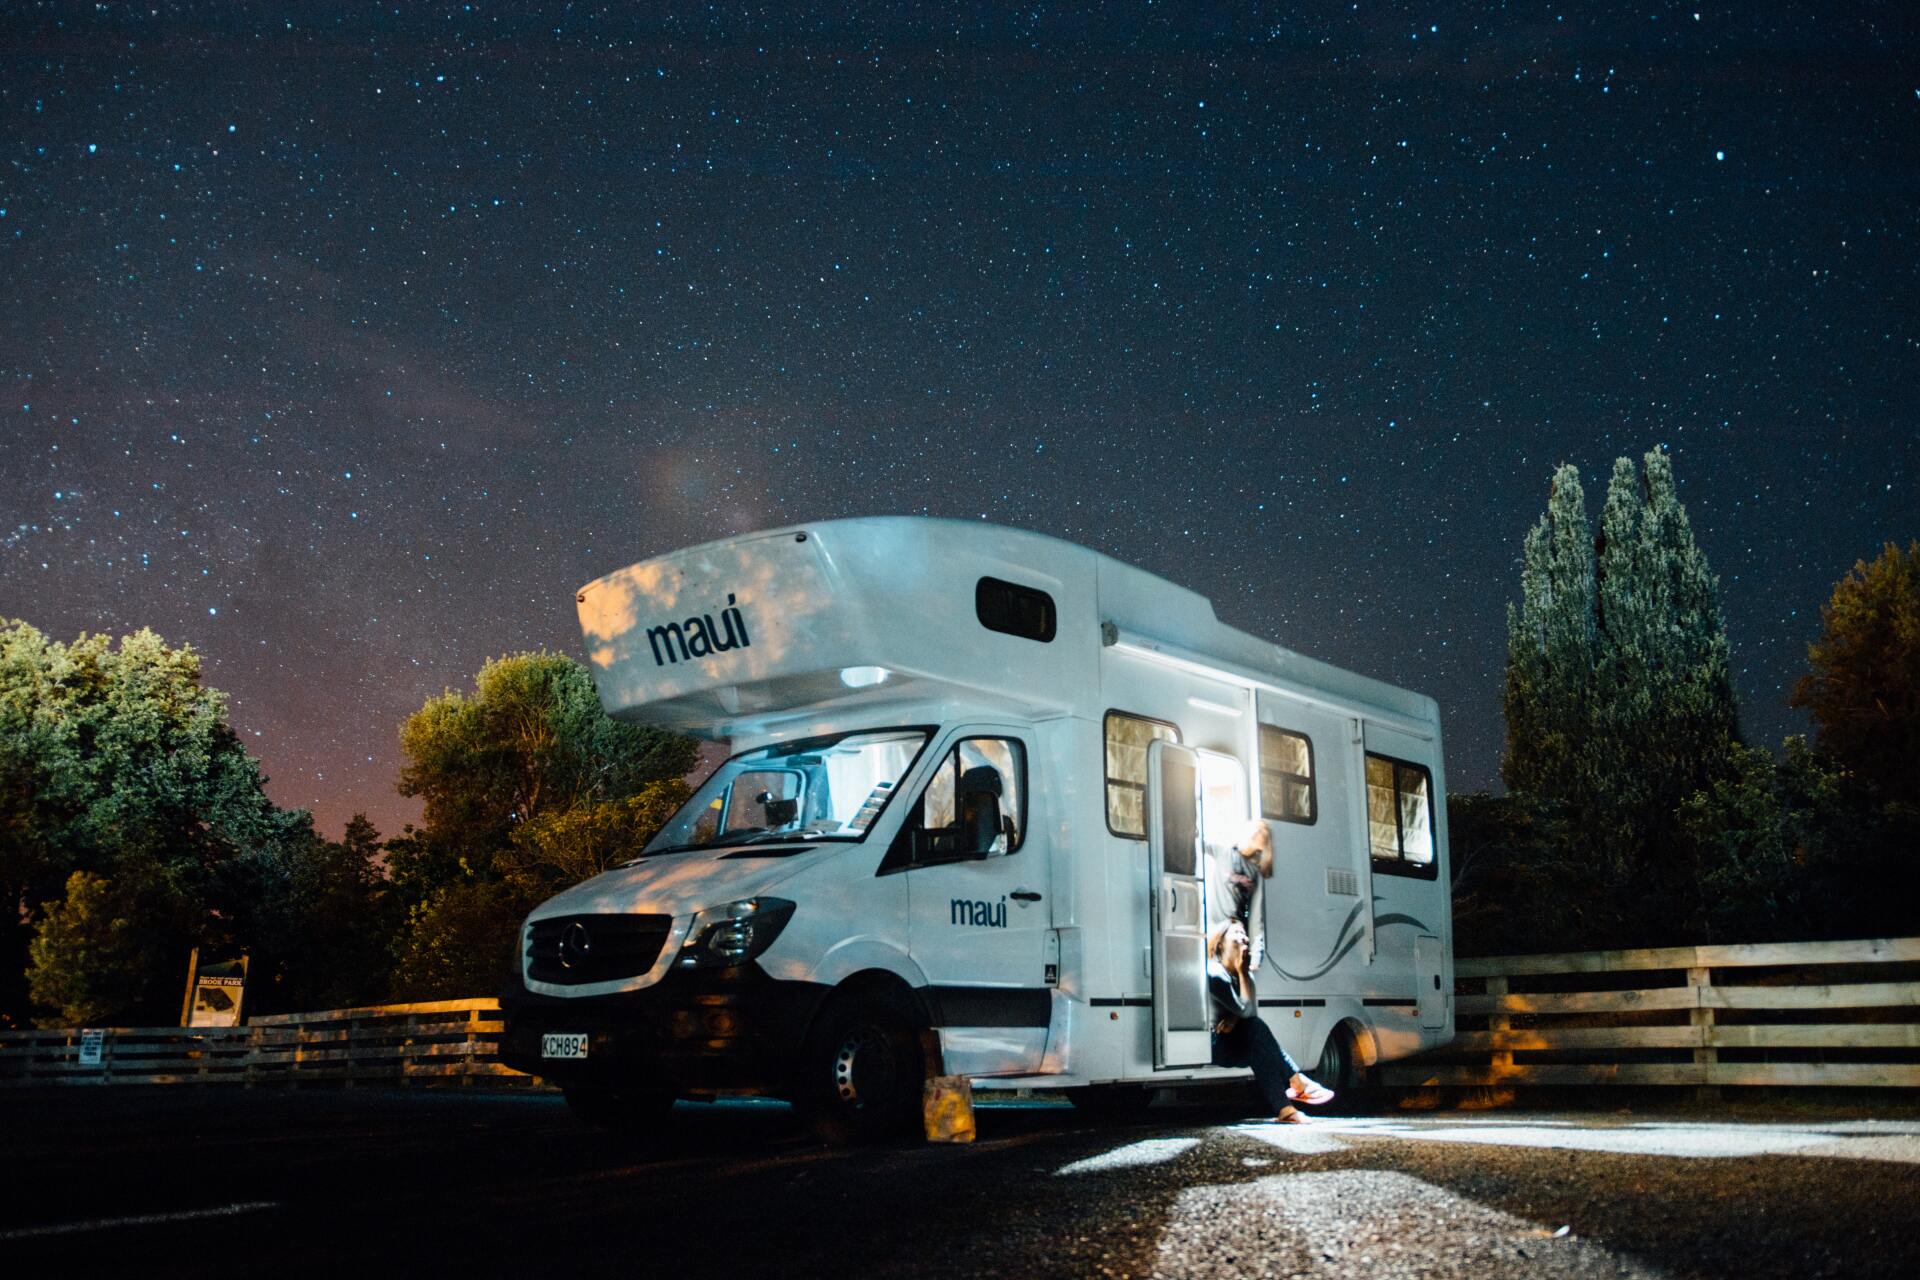 Caravan with night sky